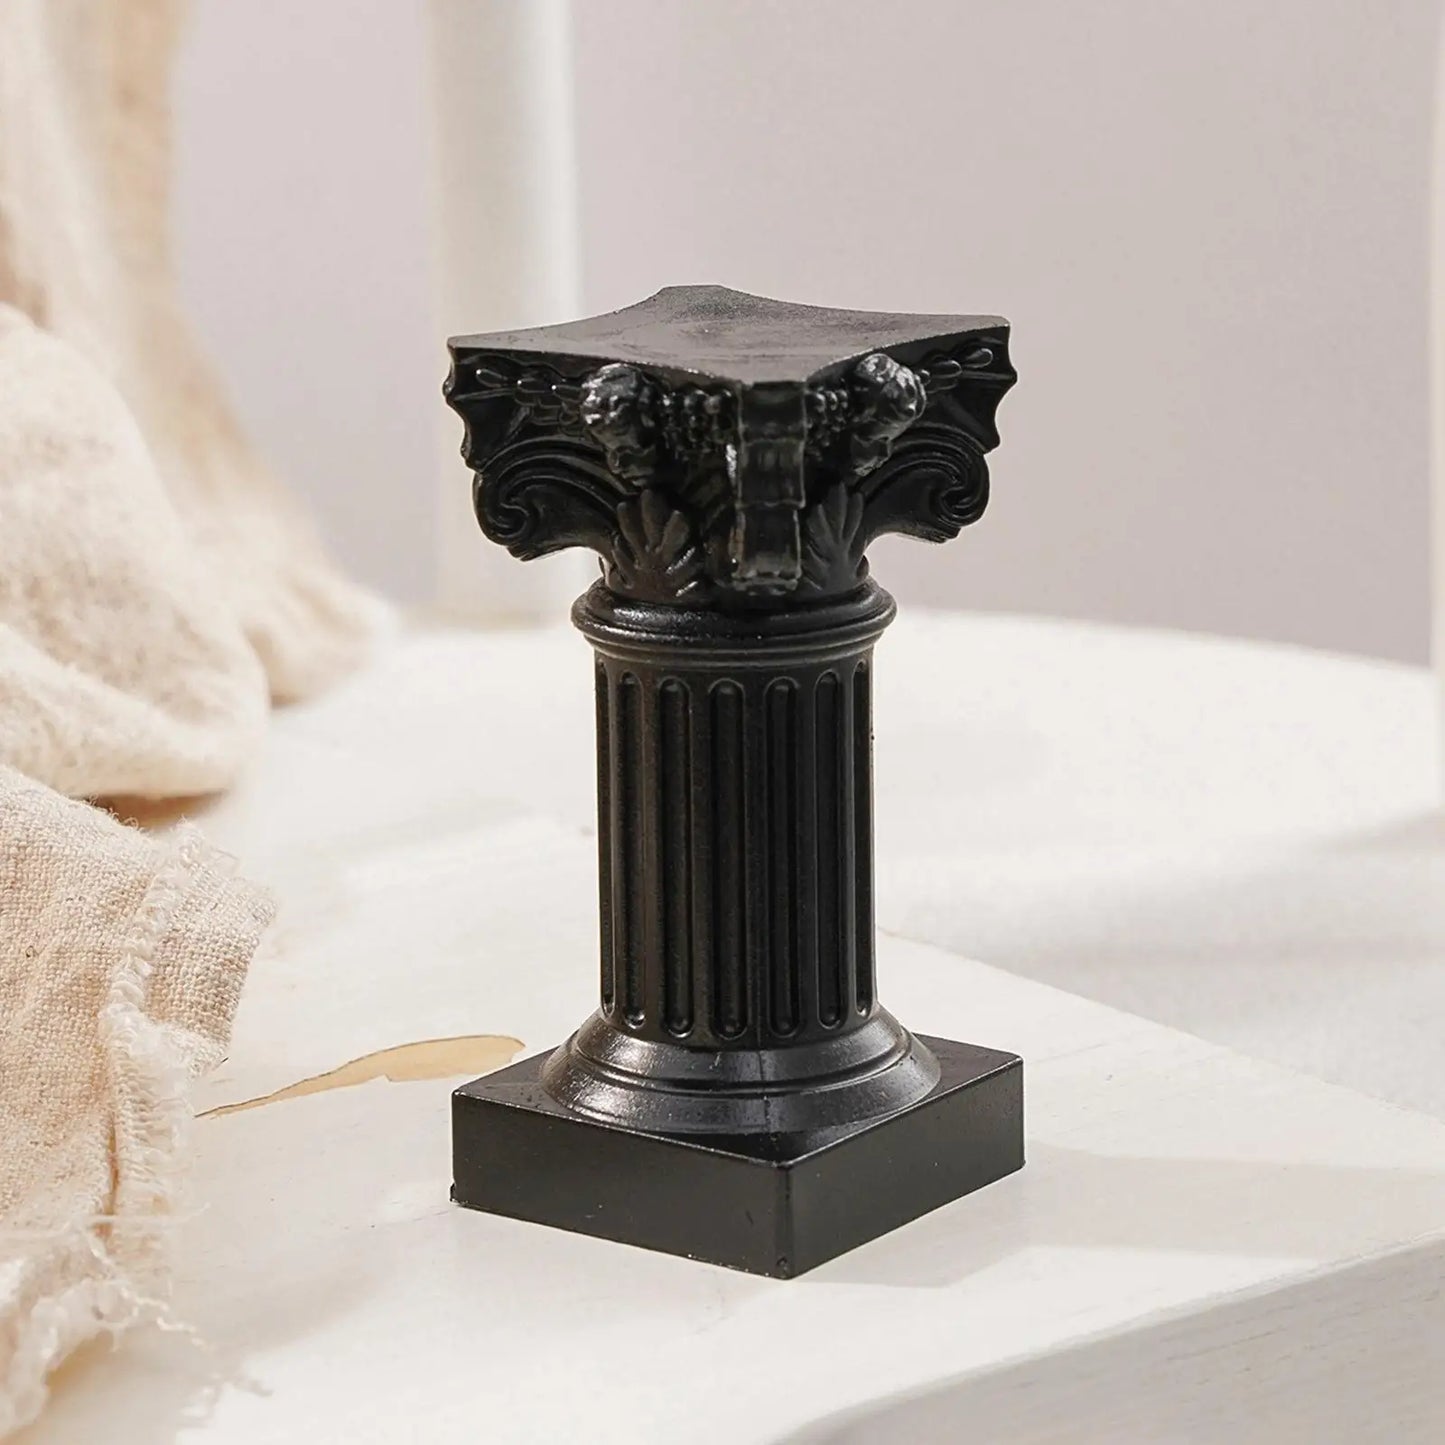 Pilier romain colonne grecque Statue piédestal chandelier support Figurine Sculpture intérieur maison salle à manger jardin paysage décor